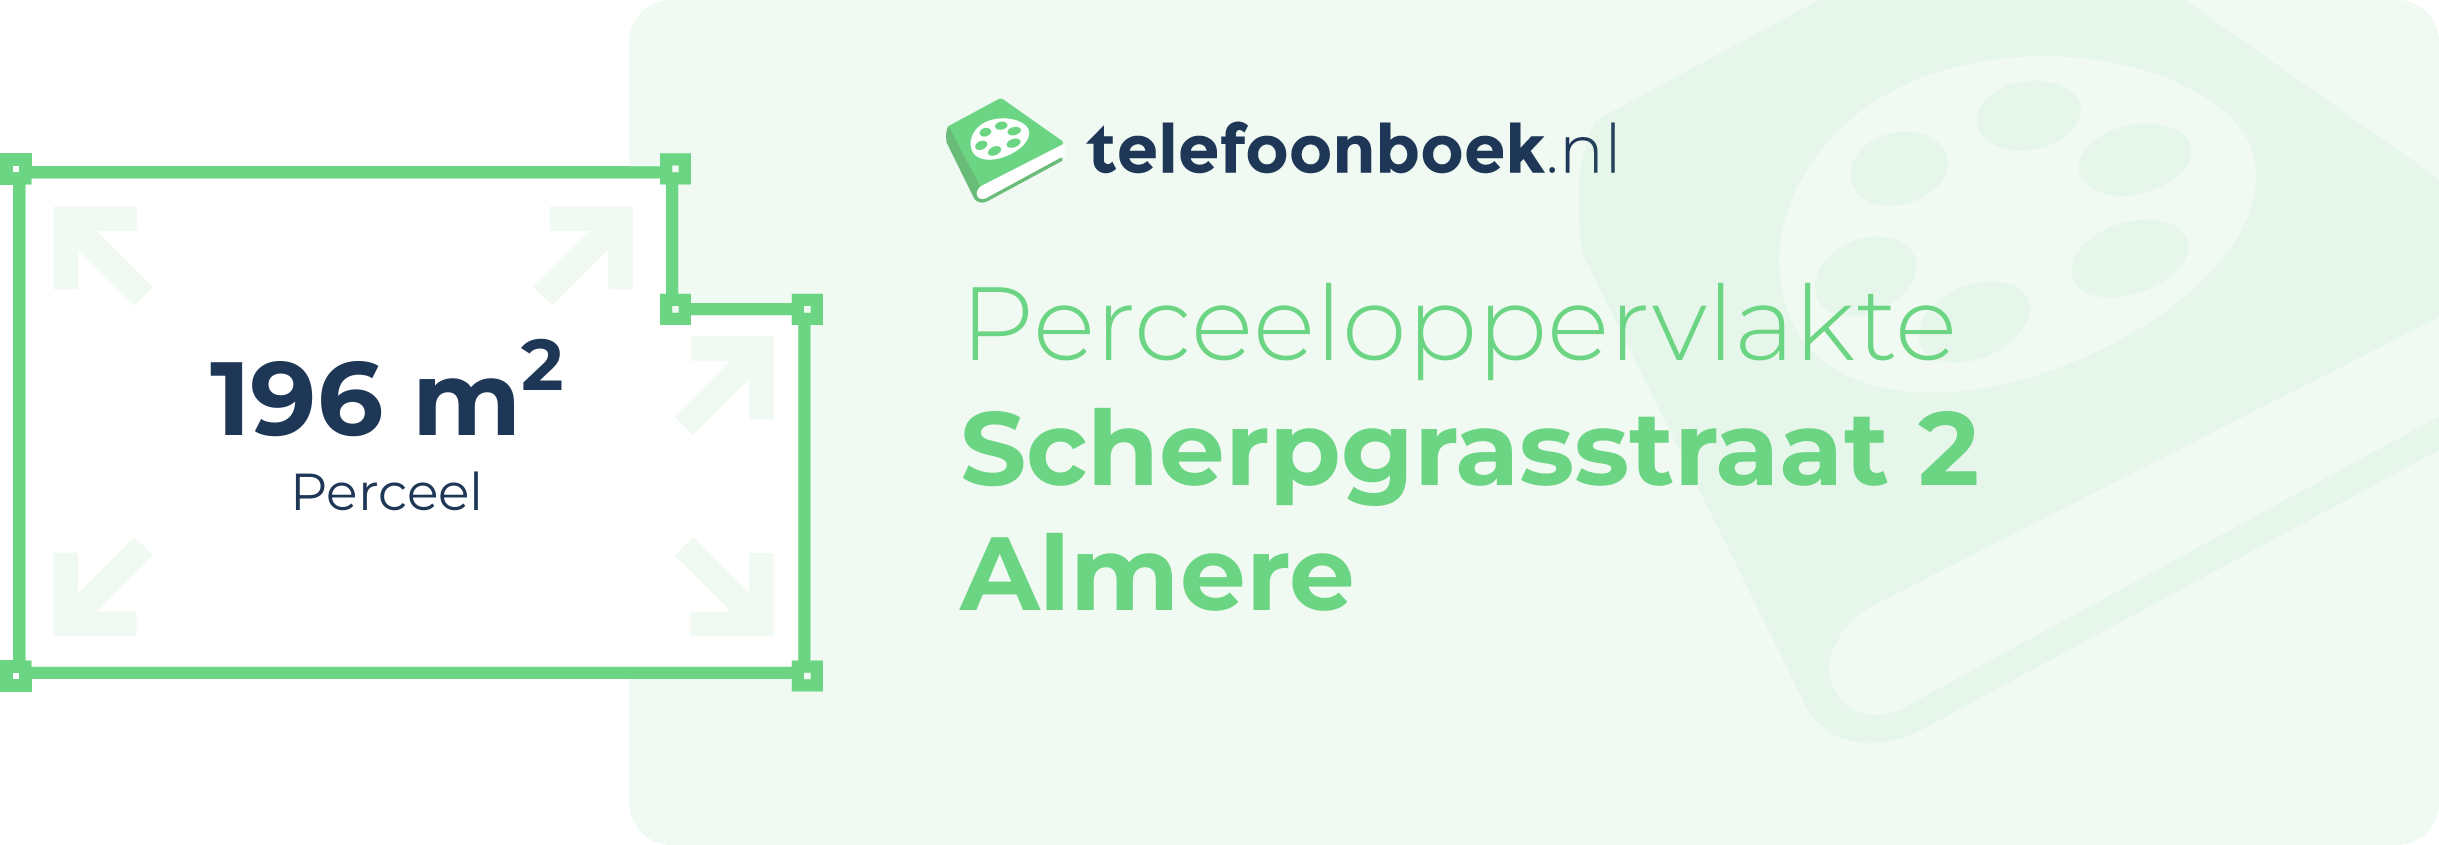 Perceeloppervlakte Scherpgrasstraat 2 Almere